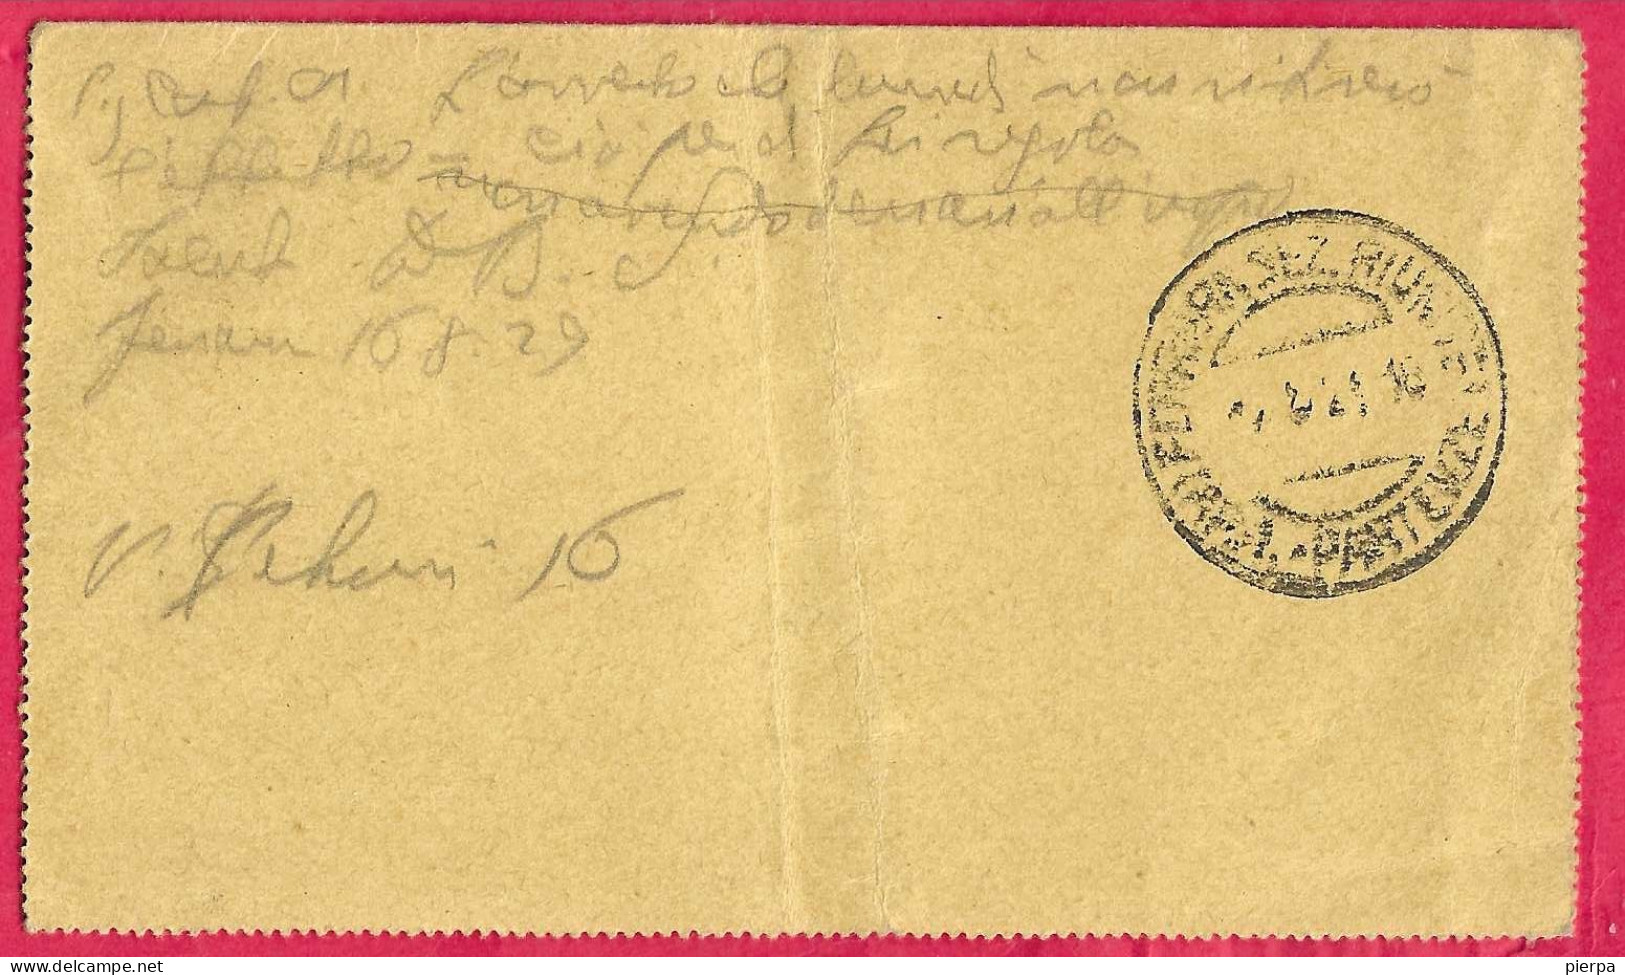 INTERO BIGLIETTO POSTALE "GIUBILEO " (INT. 27) DA BOLOGNA *7.VIII.29* PER FERRARA - Stamped Stationery